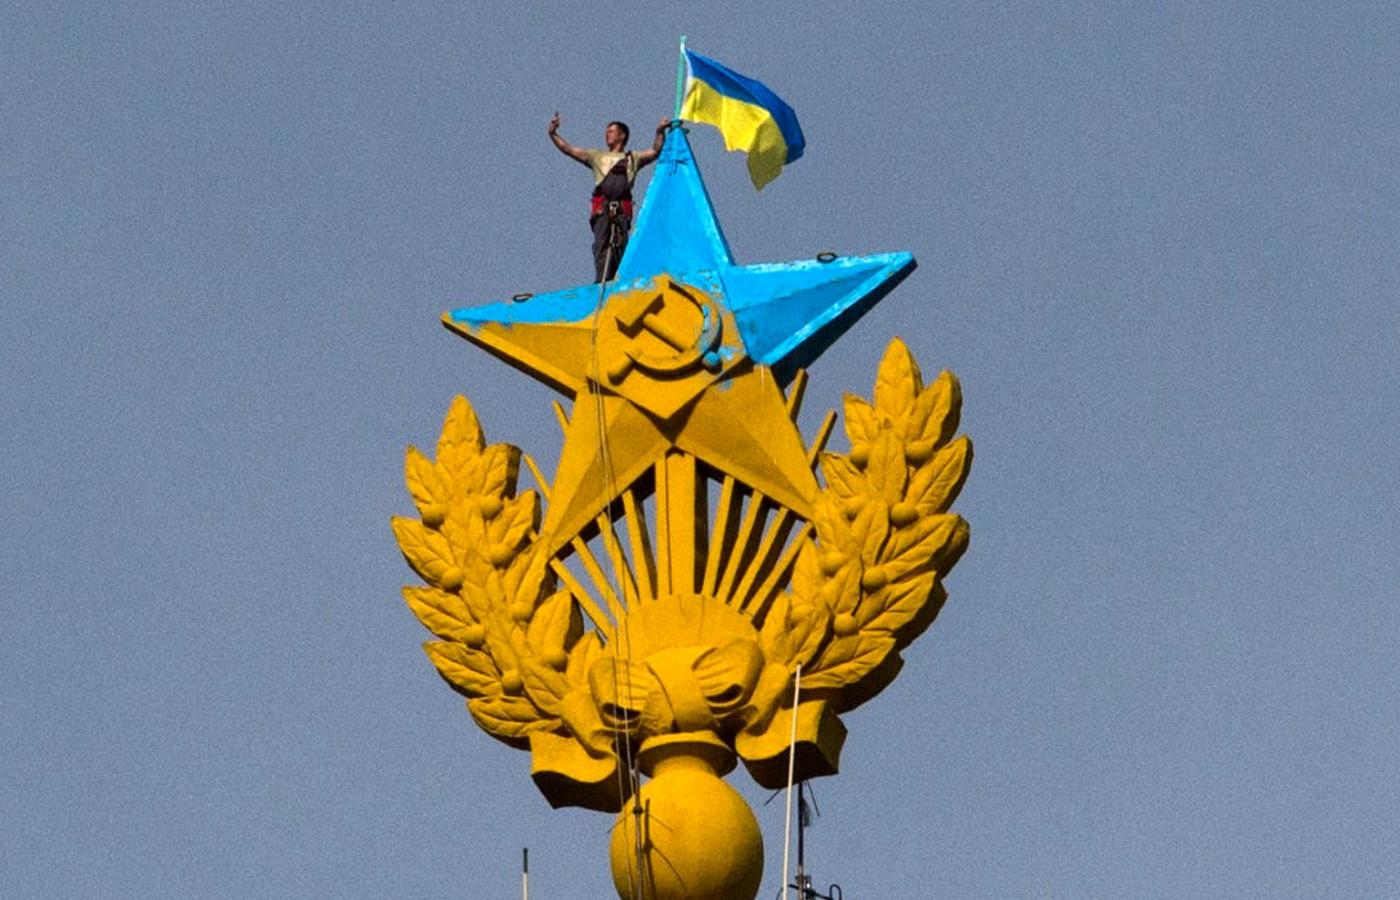 Pracownik moskiewskich służb porządkowych robi sobie „selfie” tuż przed zdjęciem ukraińskiej flagi ze szczytu 176-metrowego budynku.